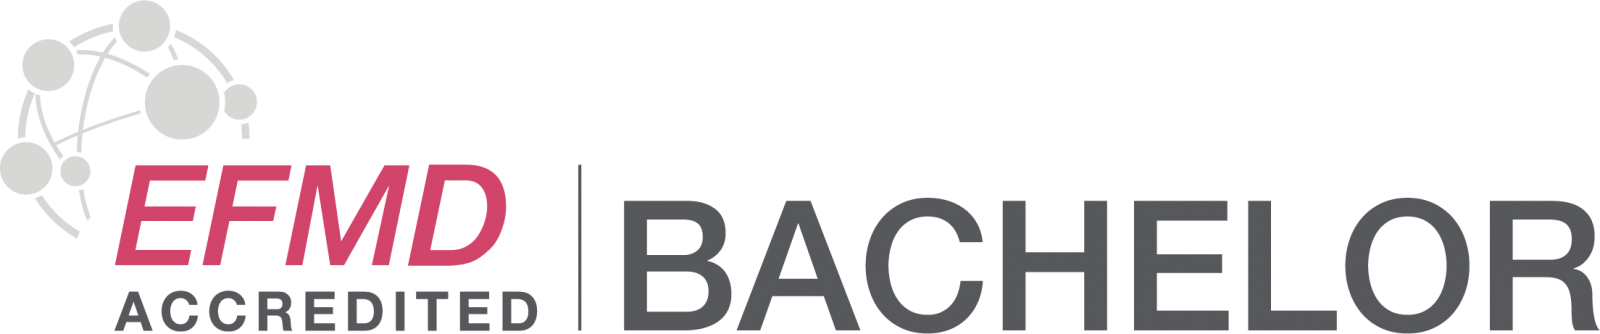 EFMD Accredited Bachelor Logo